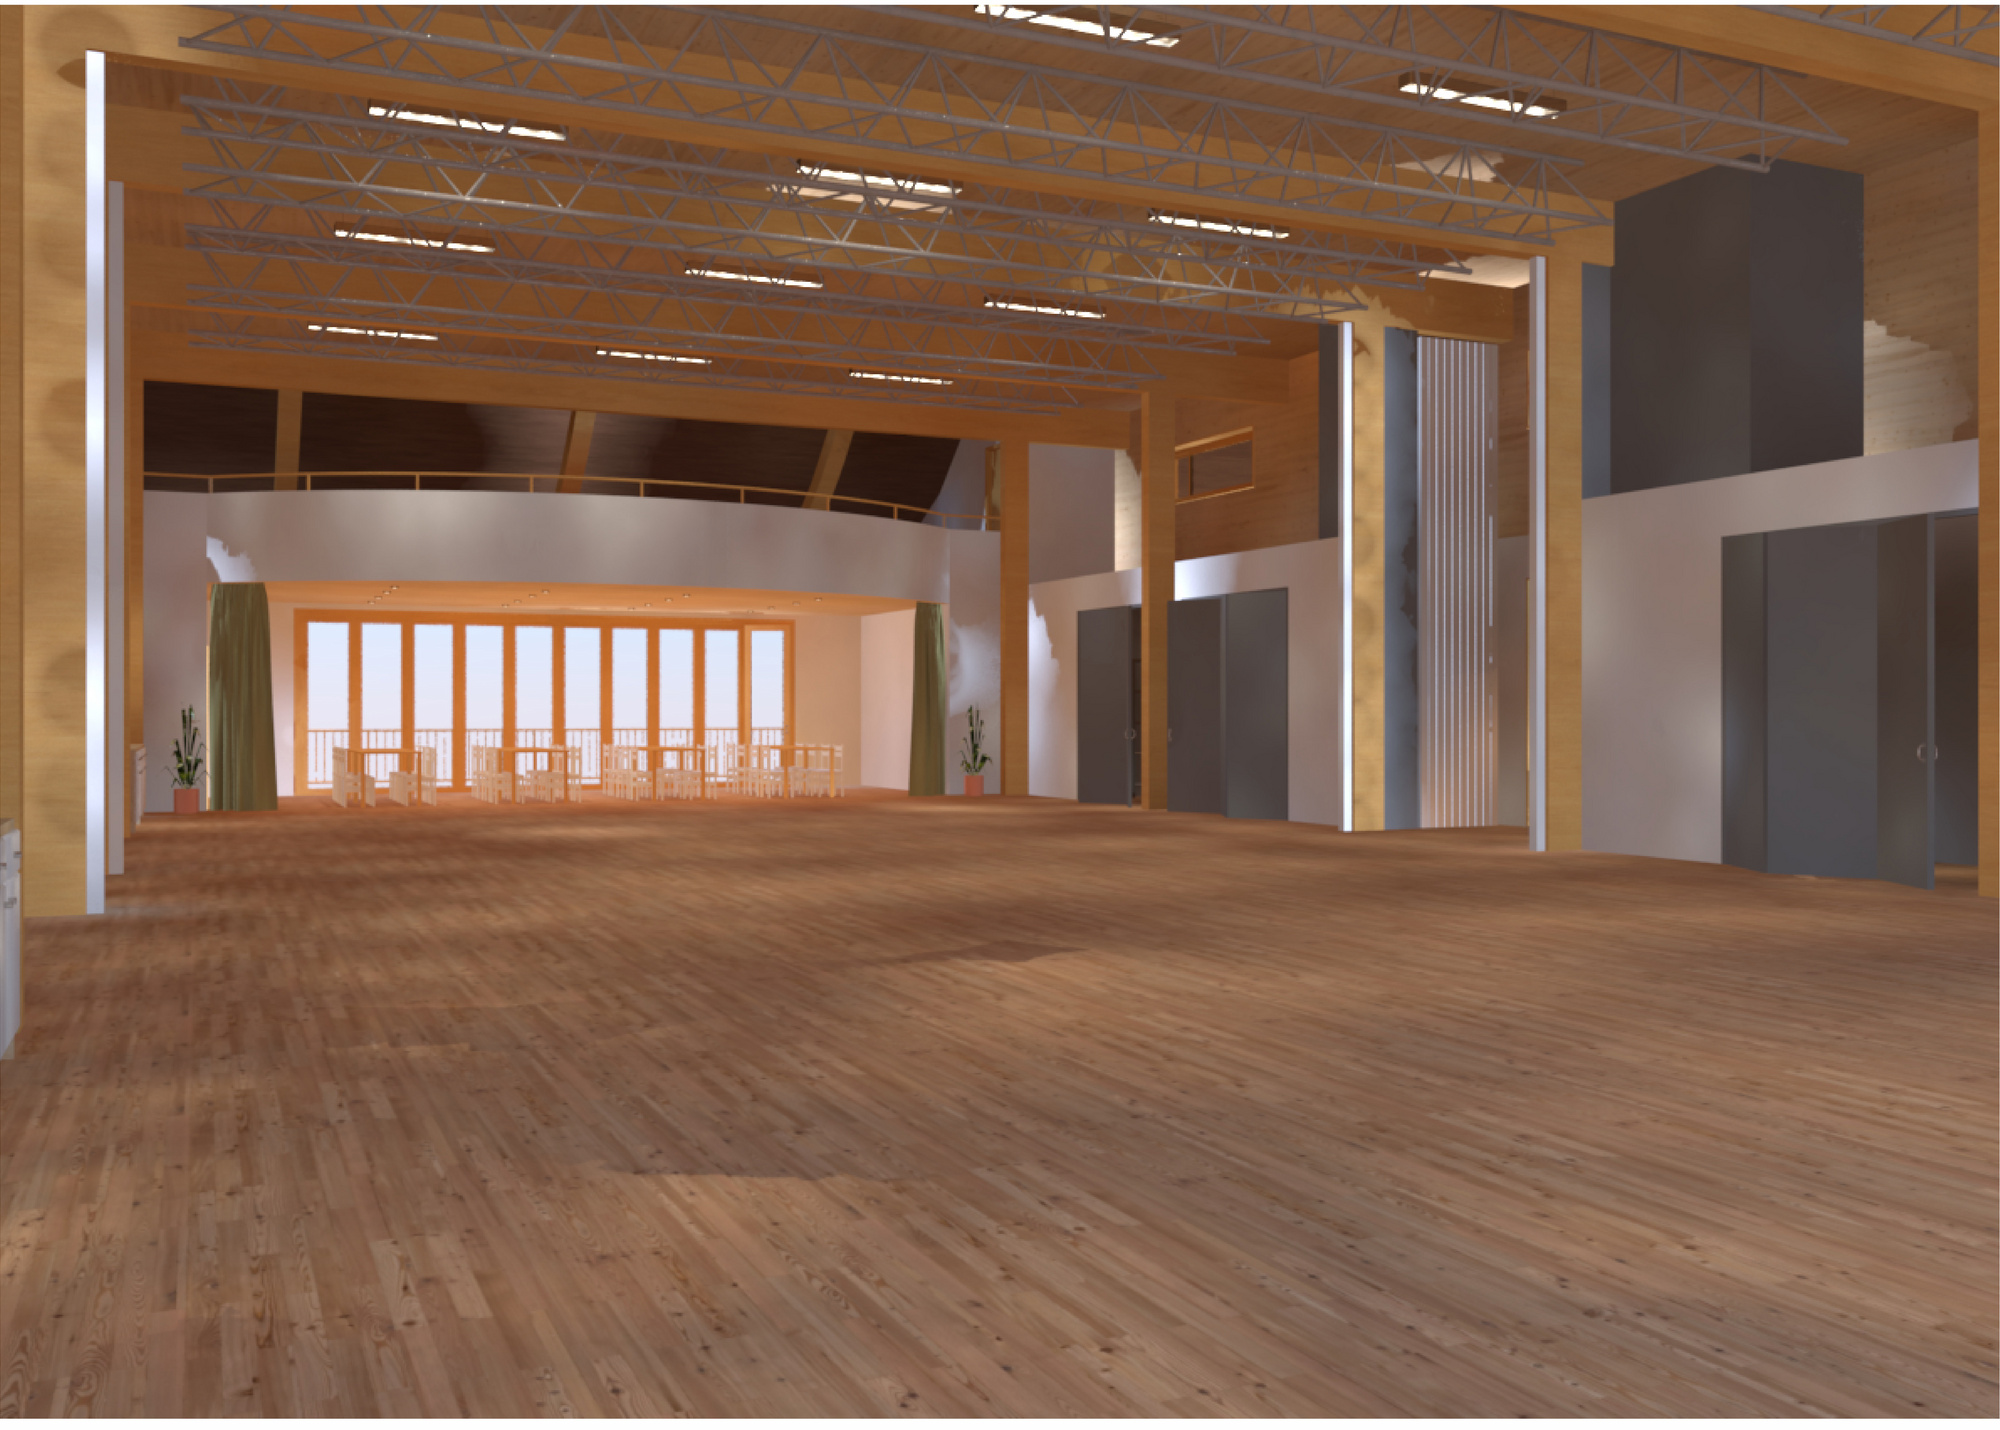 Image 3D - bâtiment Bovino - salle